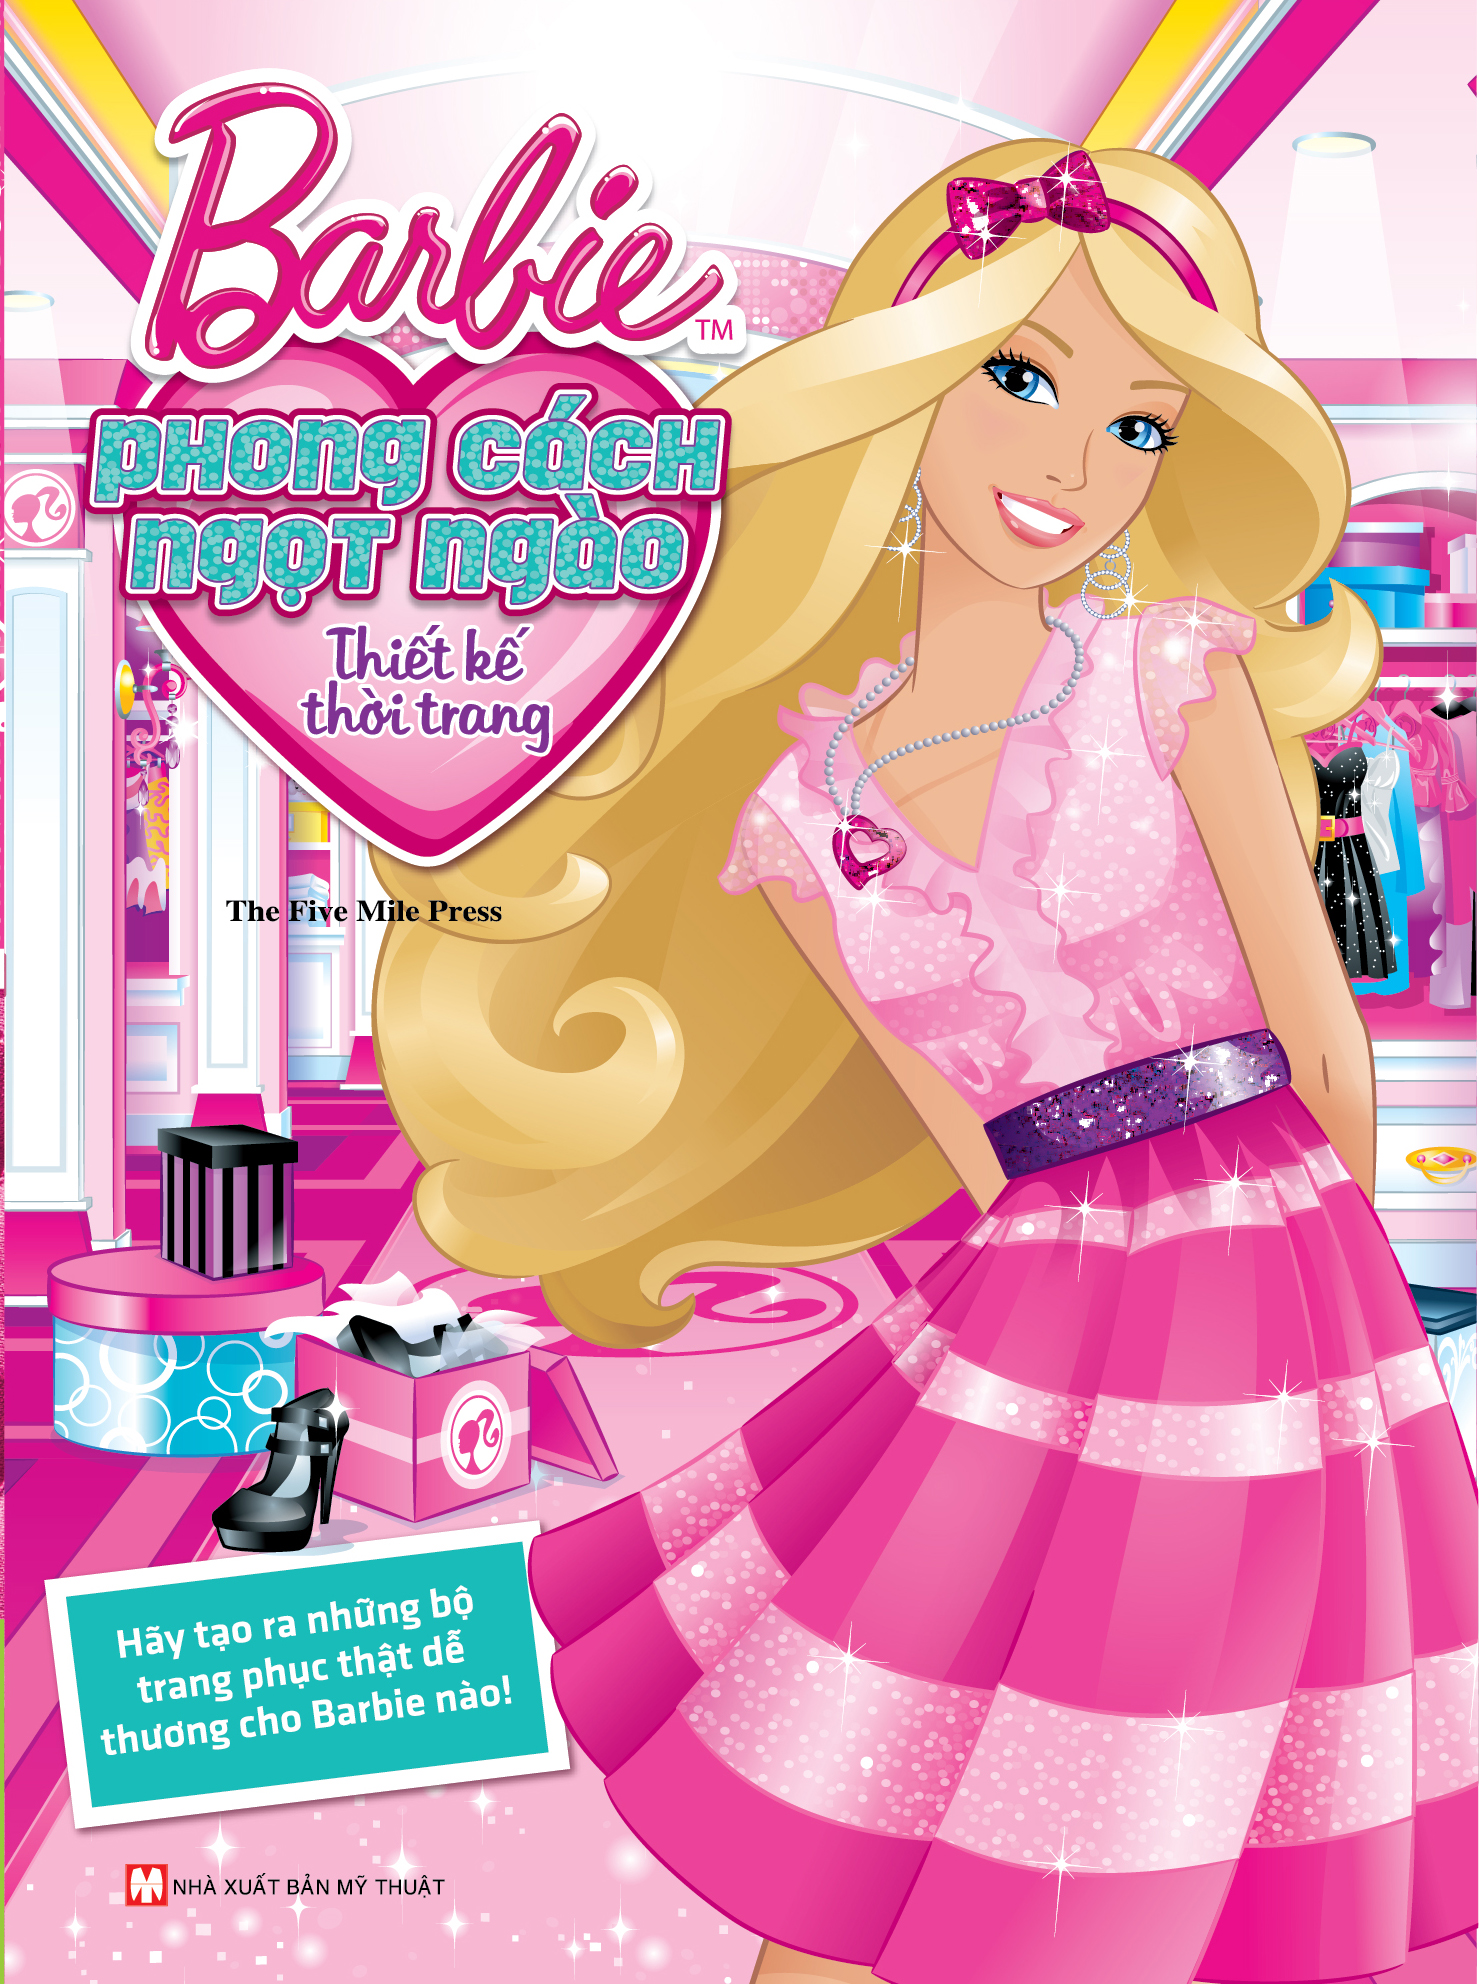 Bìa sách Barbie Thiết Kế Thời Trang - Phong Cách Ngọt Ngào